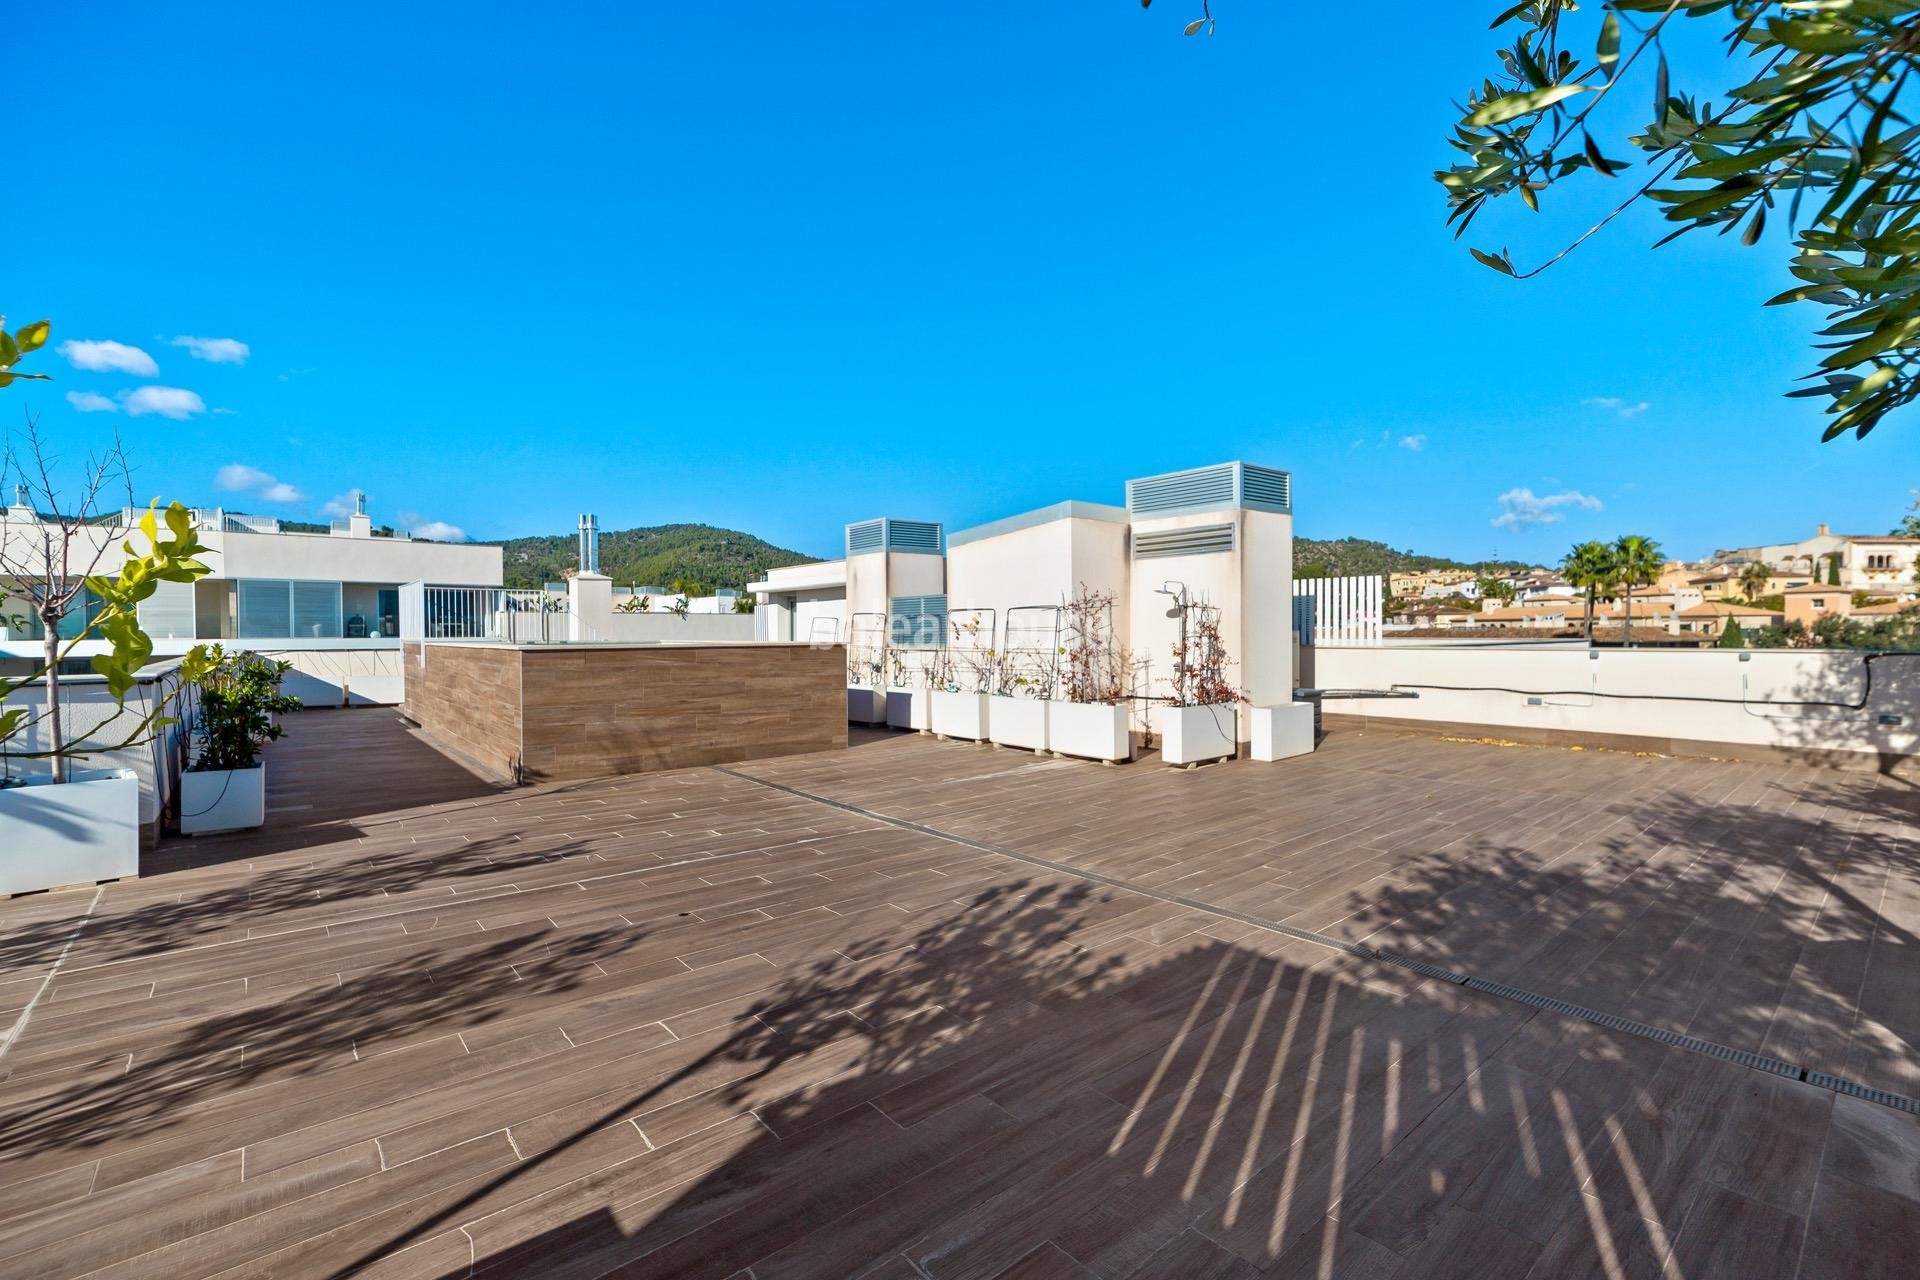 Fantastisches Penthouse mit privatem Solarium in gepflegter Anlage vor dem Golfplatz in Palma